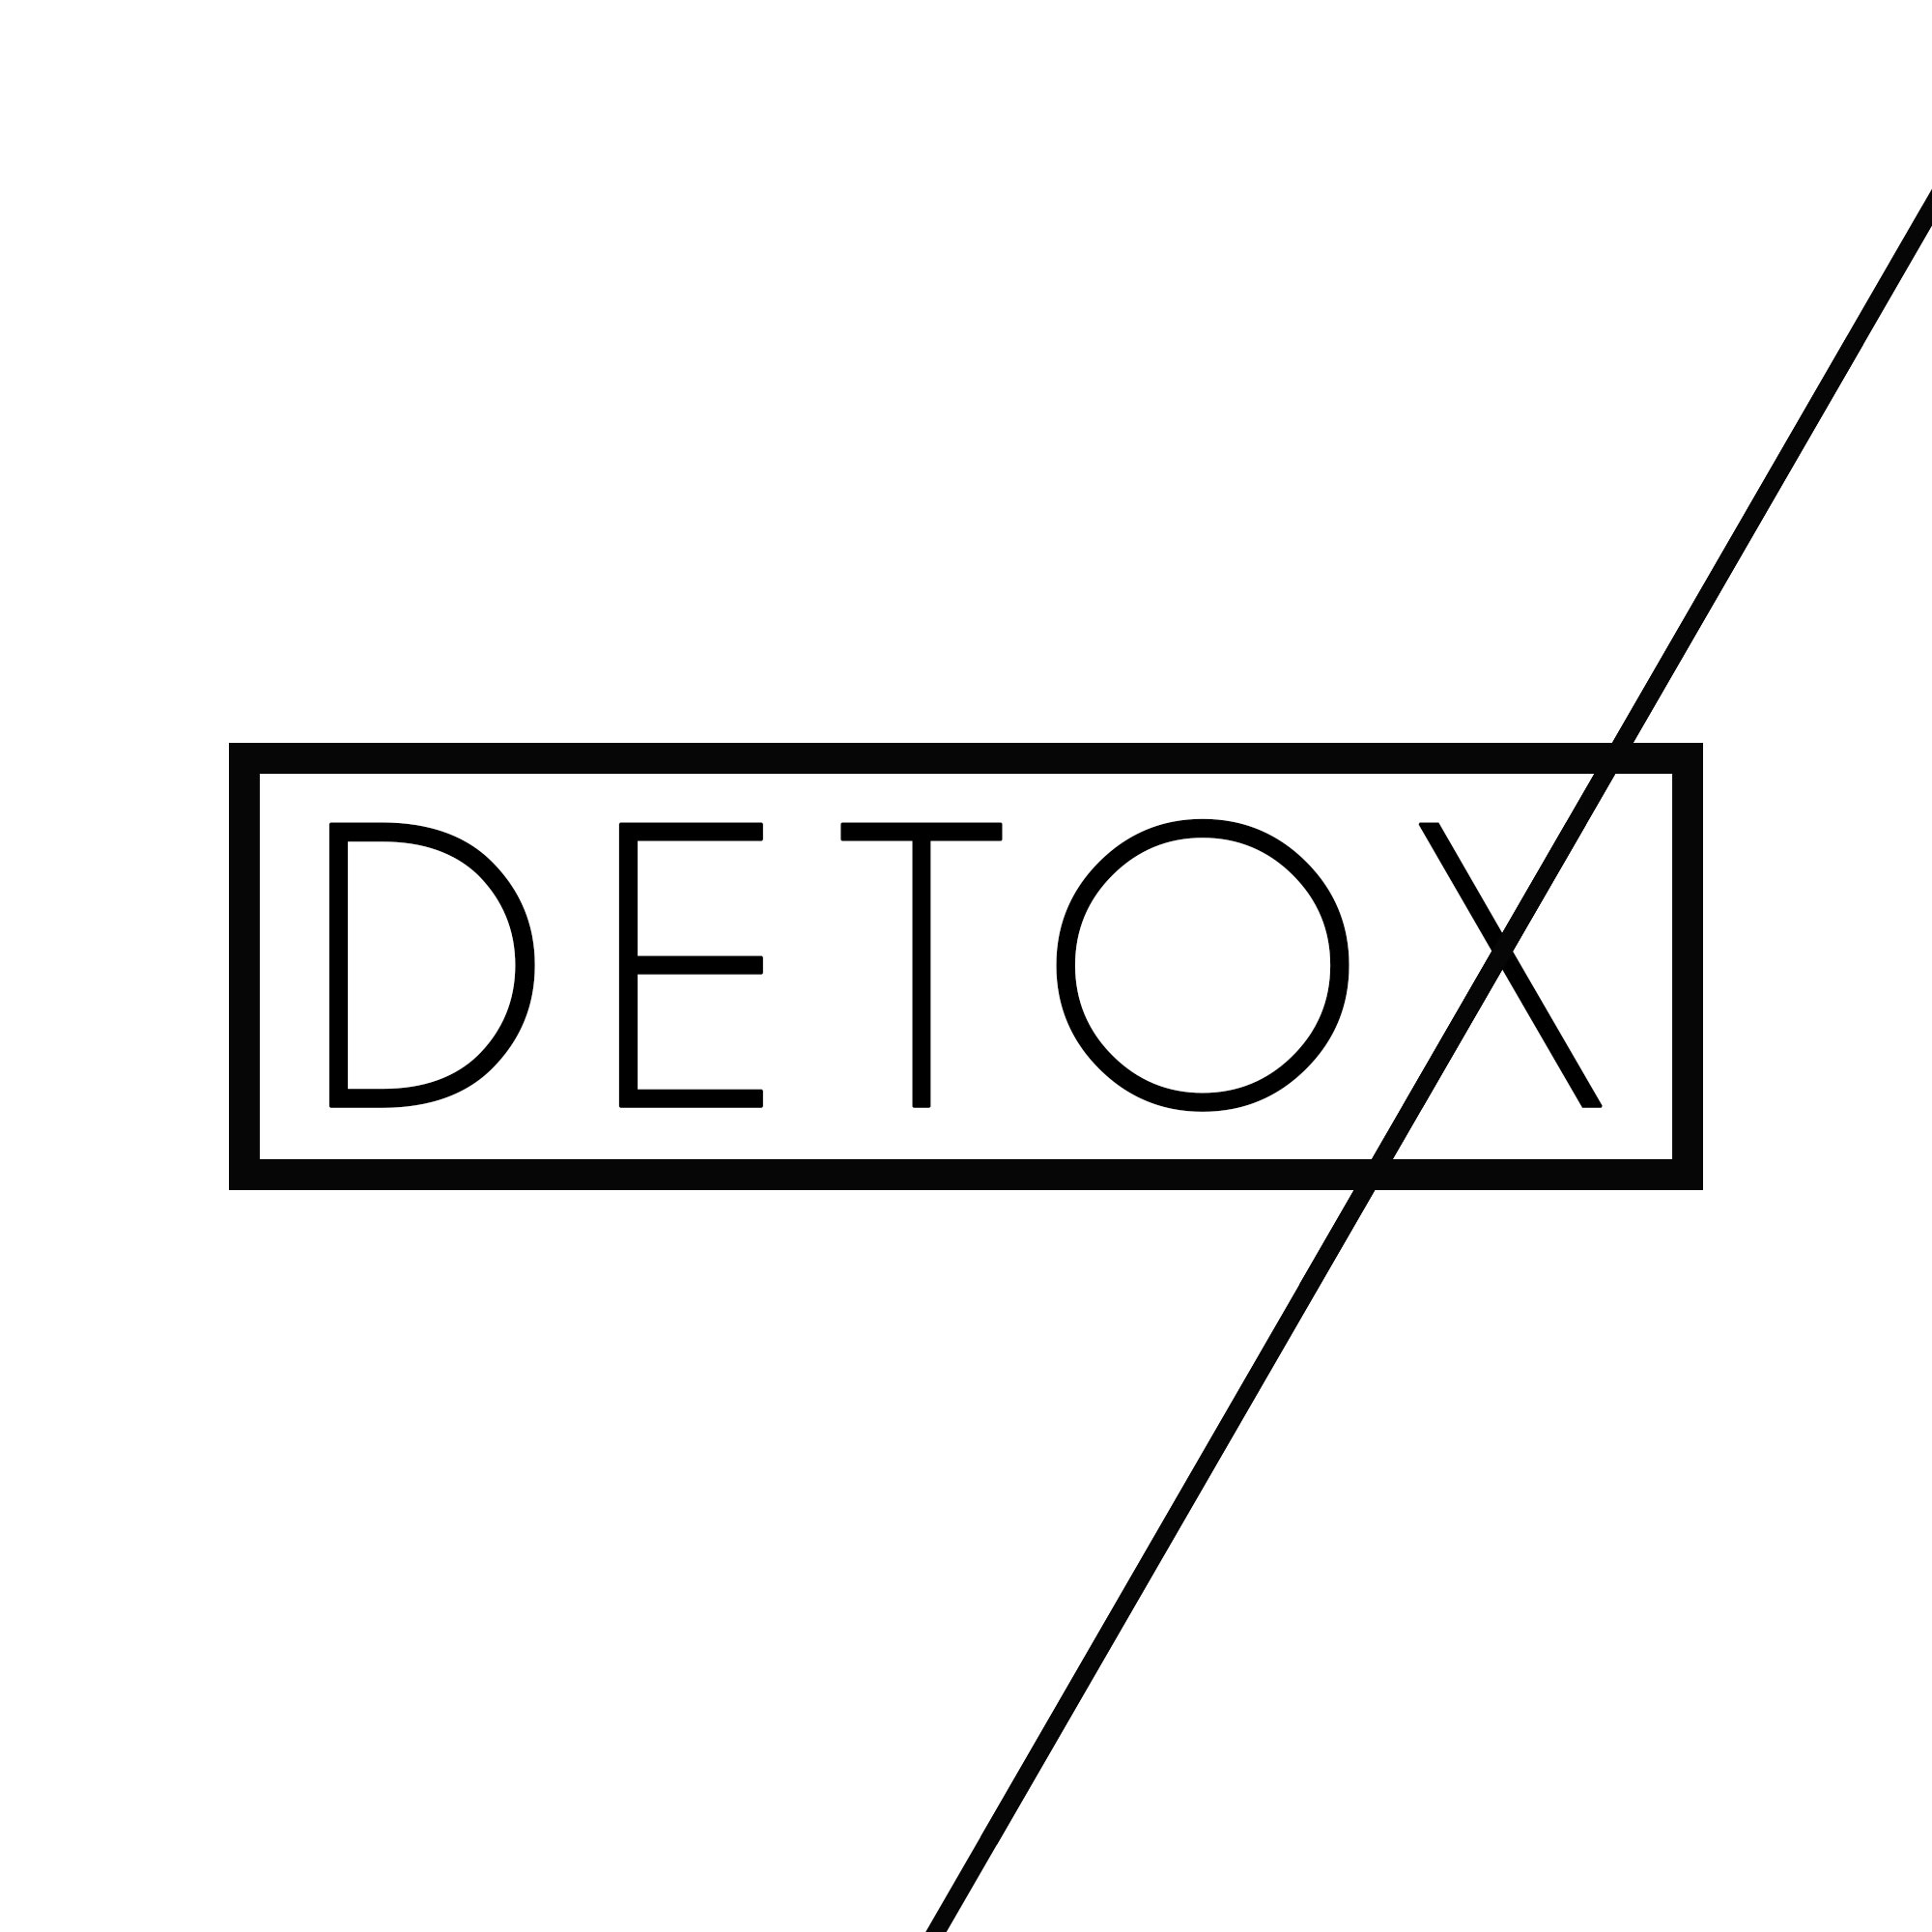 Detox (Pt.5) - The Clique-less Kingdom